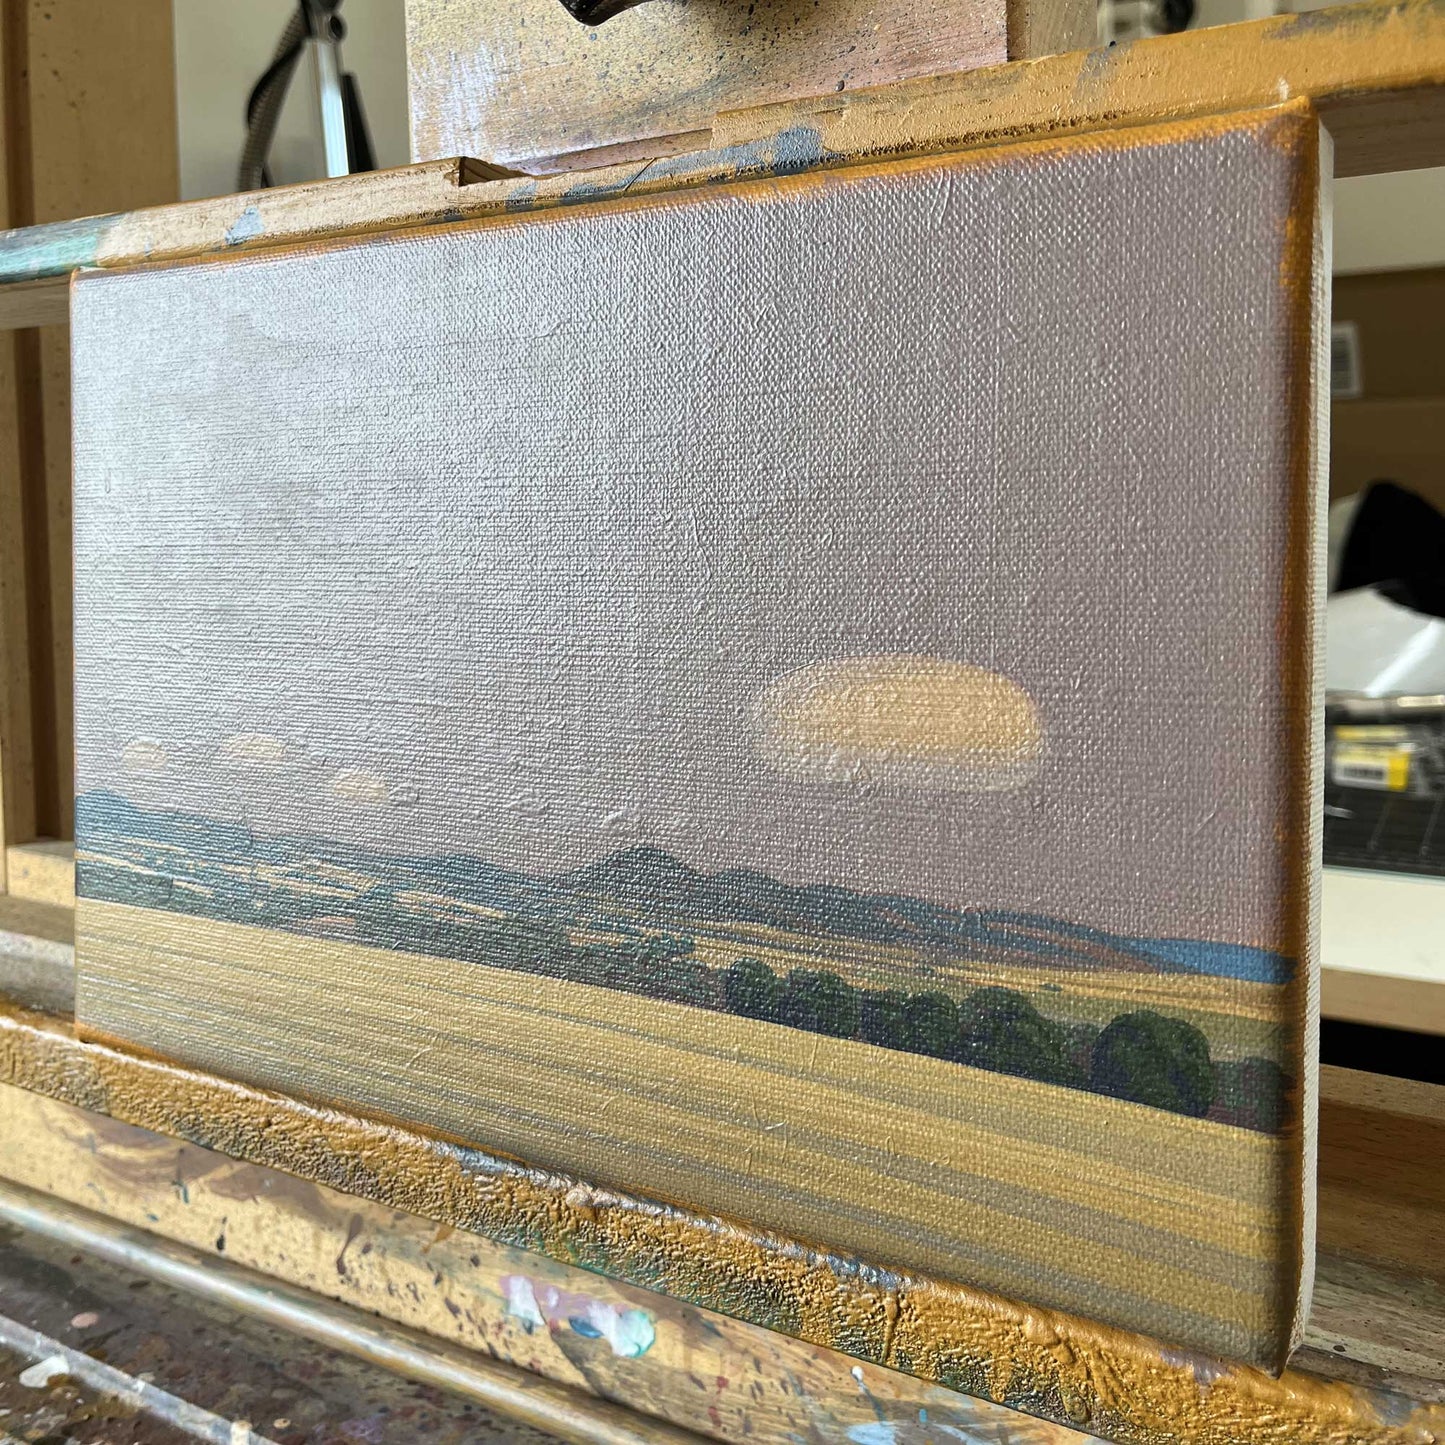 Vier Wolken, Unikat, Malerei, handgemaltes Einzelstück, 30 x 20 cm, Acrylfarbe auf Leinwand